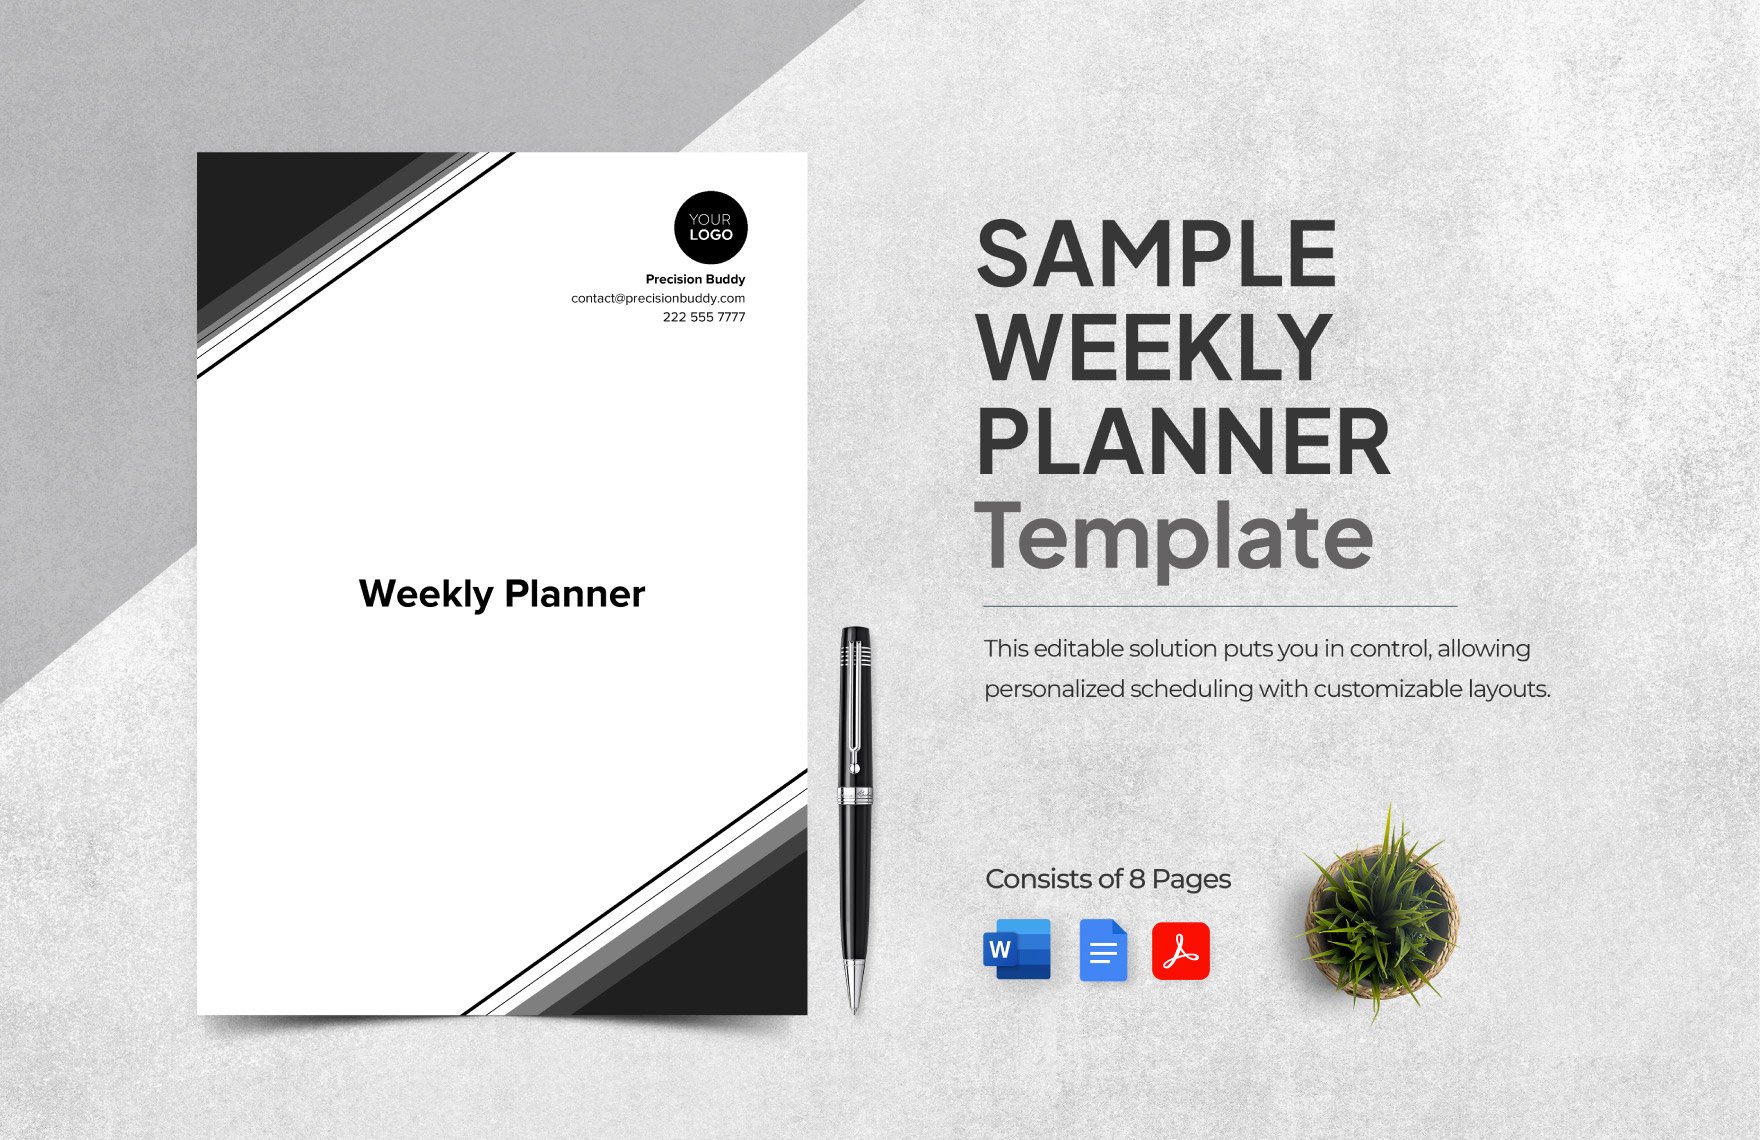 Sample Weekly Planner Template